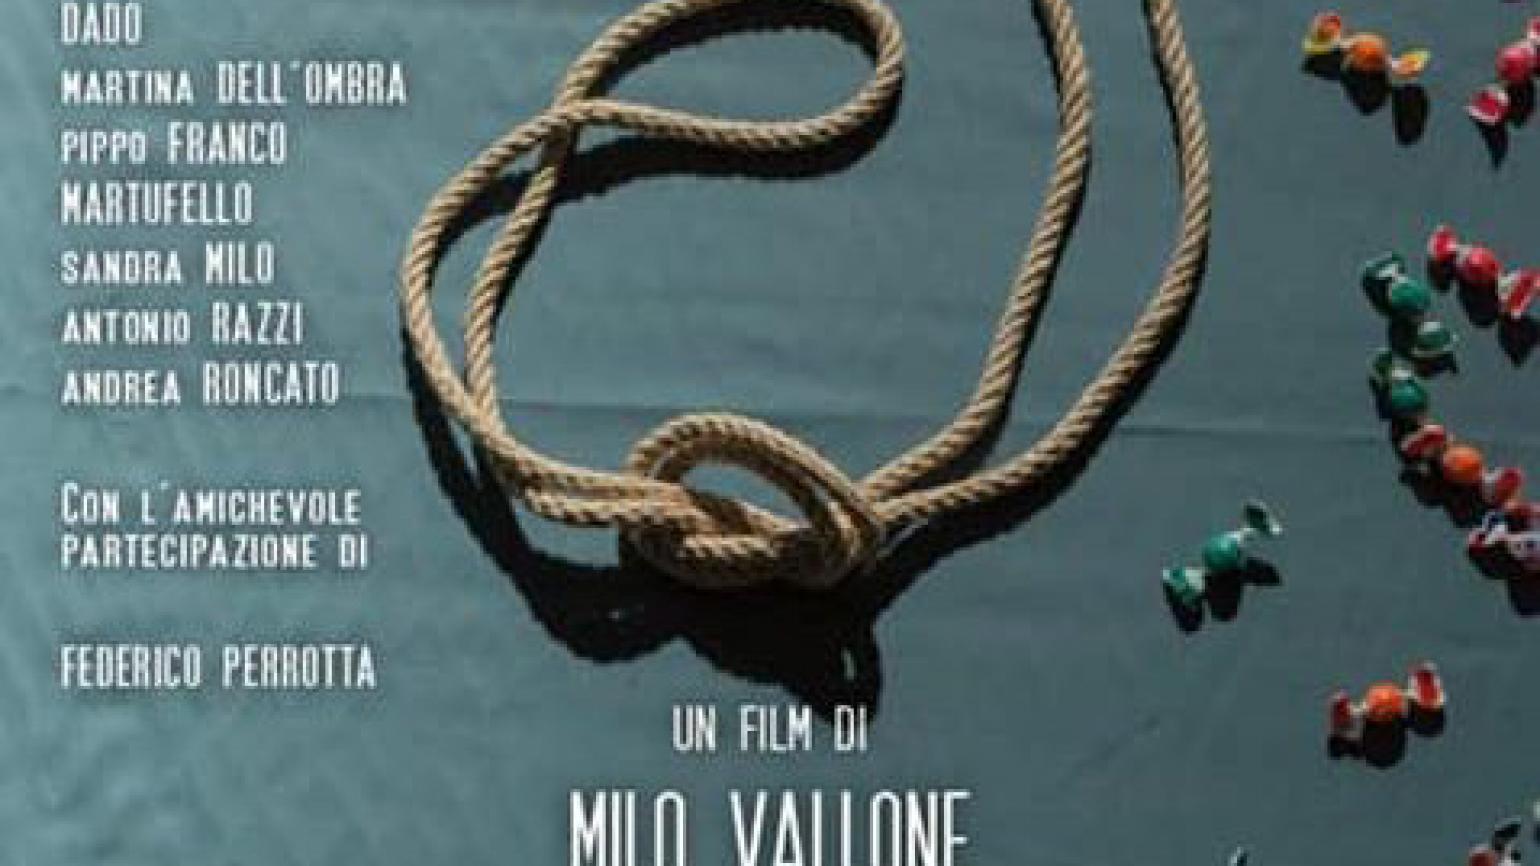 A Pescara la  première di Nemici, il nuovo film di Milo Vallone